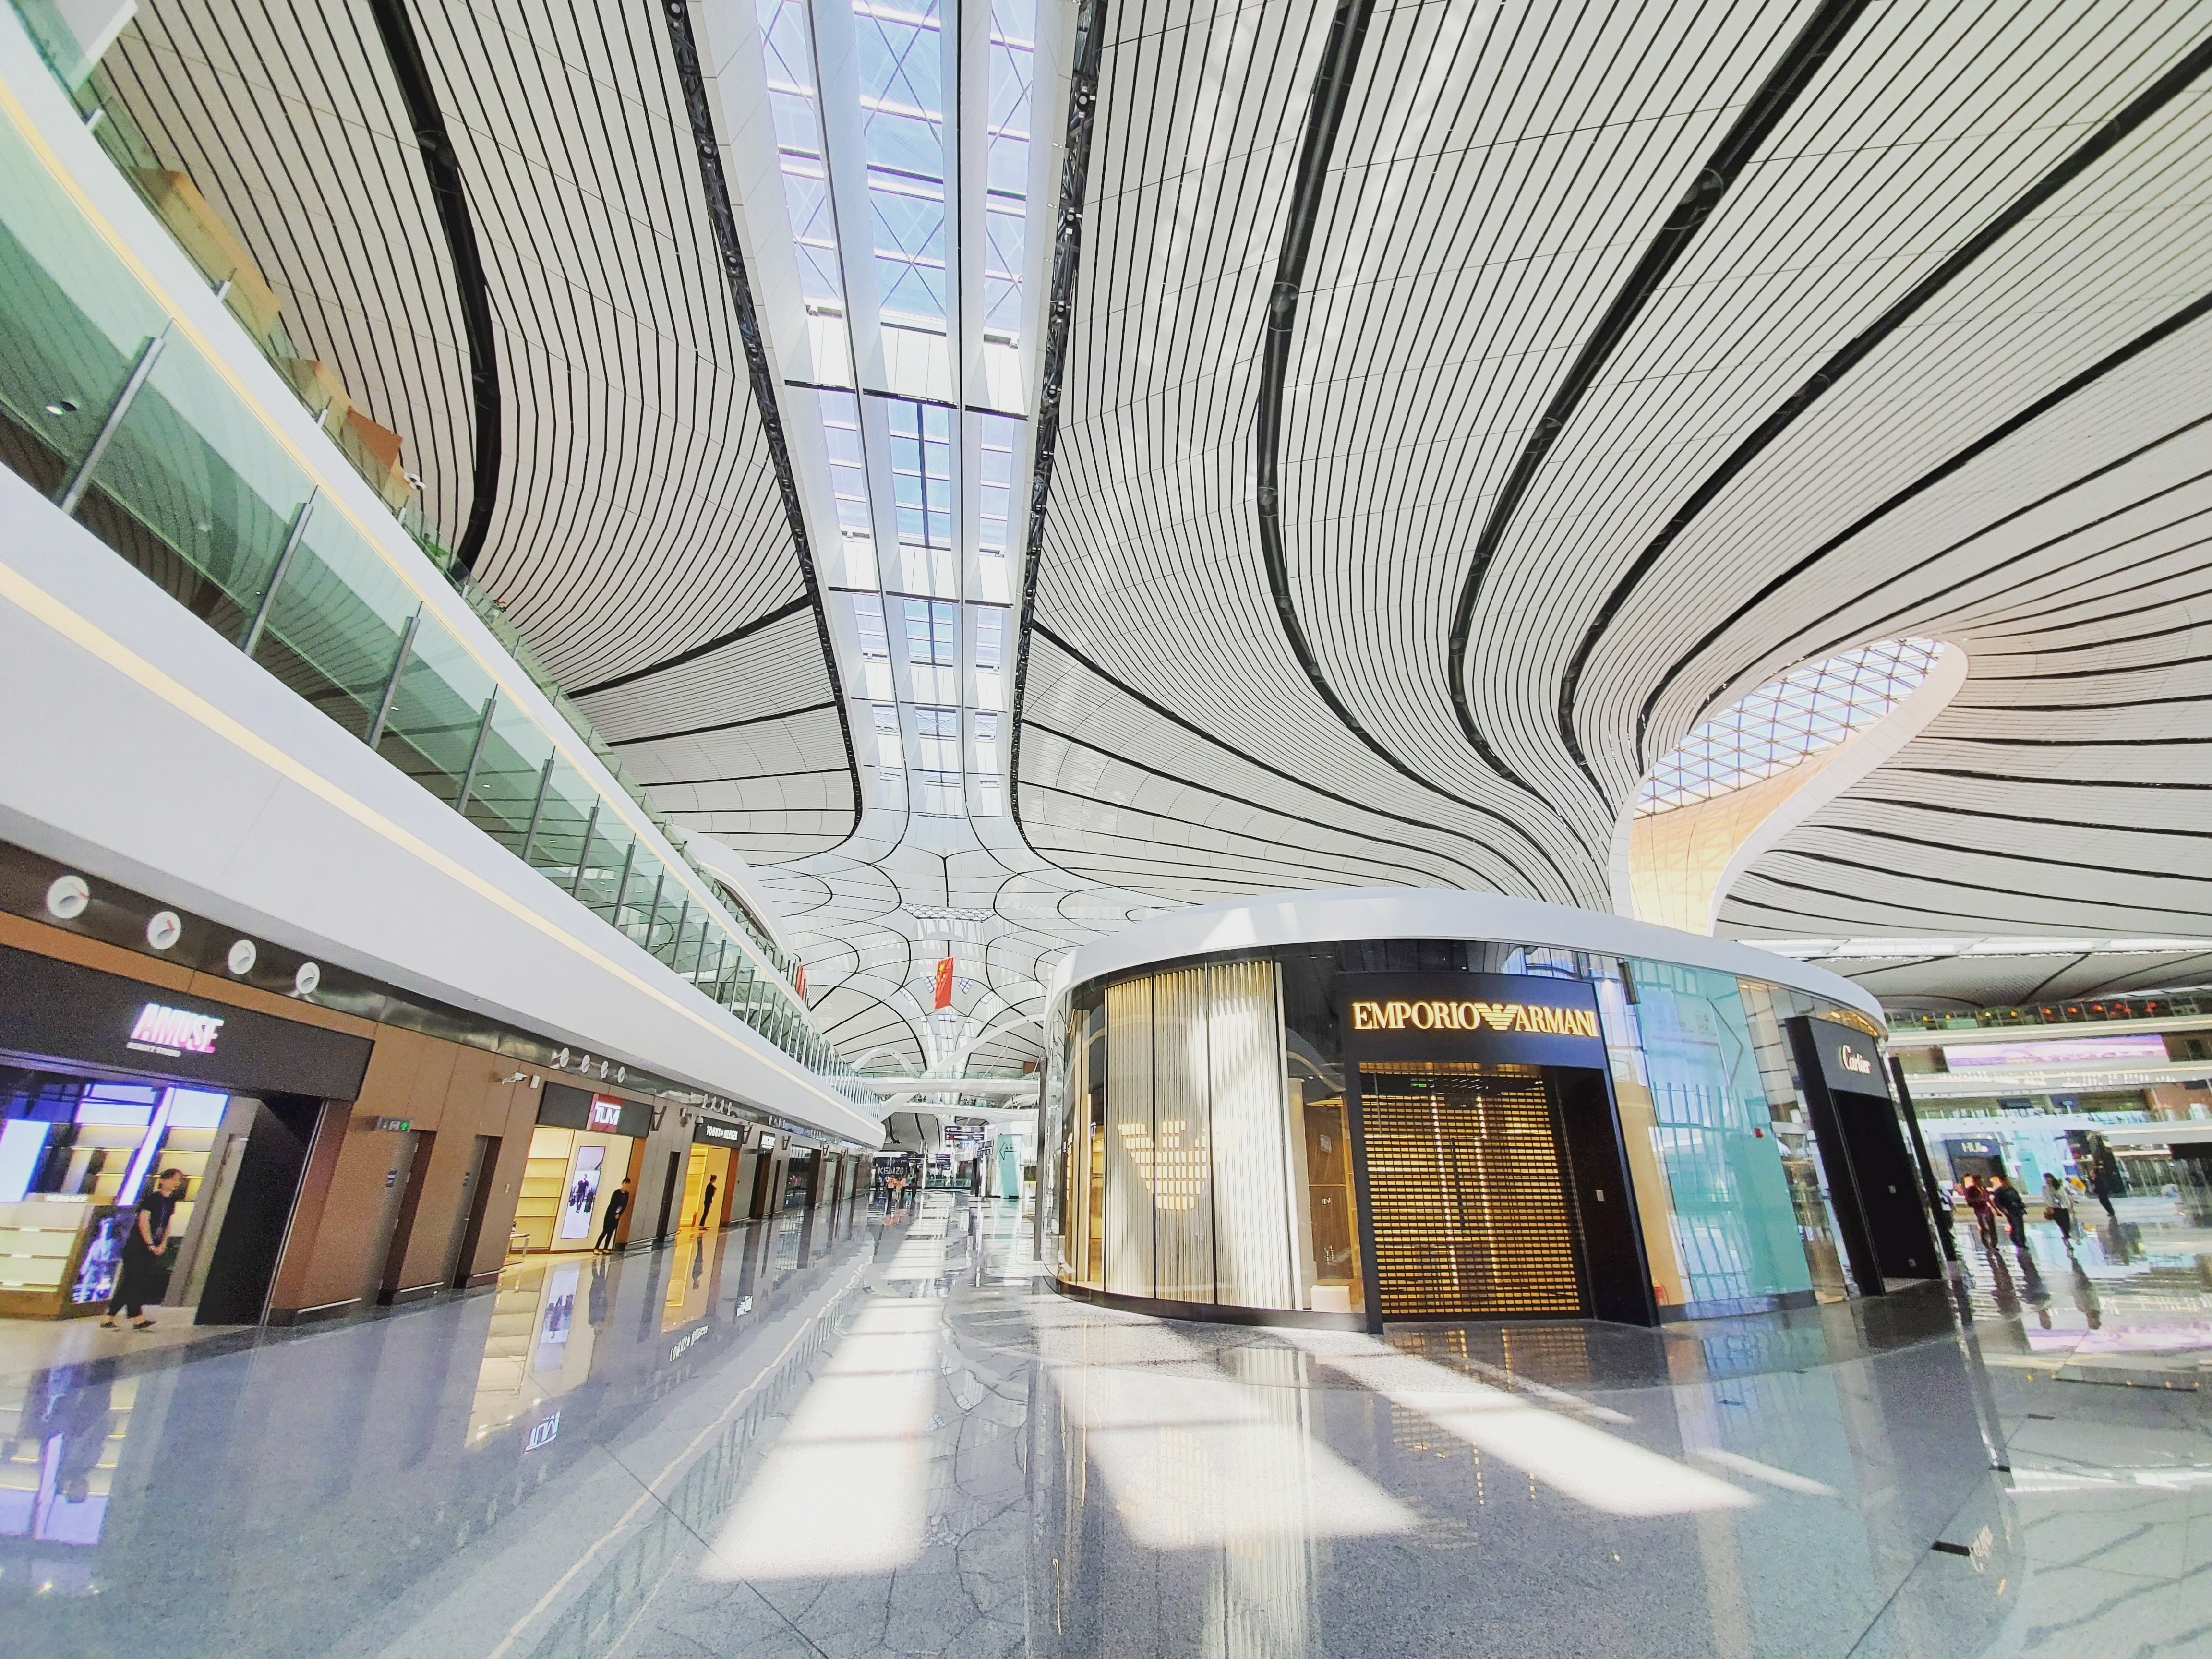 北京大兴国际机场商铺概览二,一起来先睹为快吧!